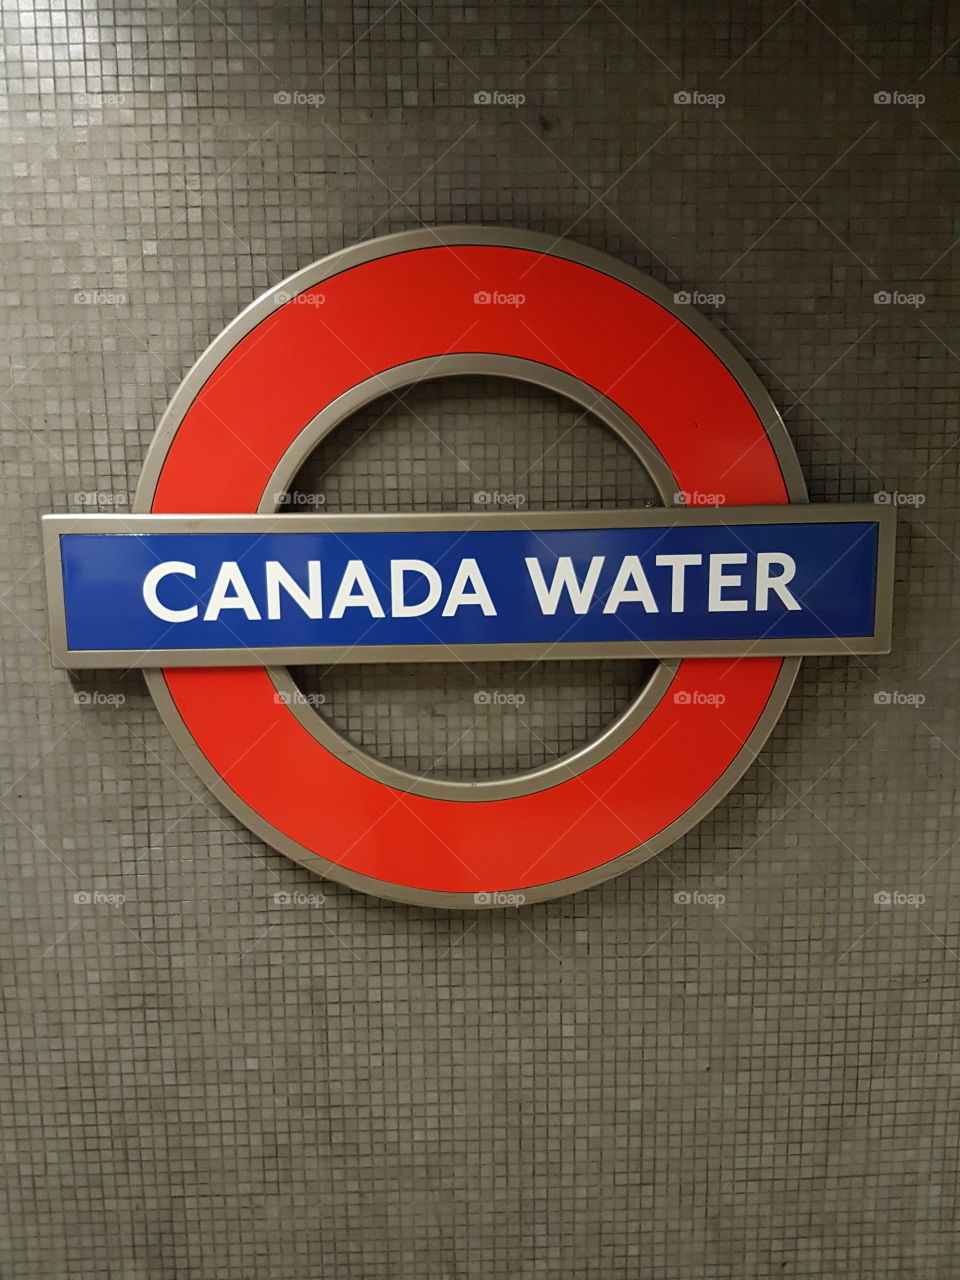 Canada water station underground